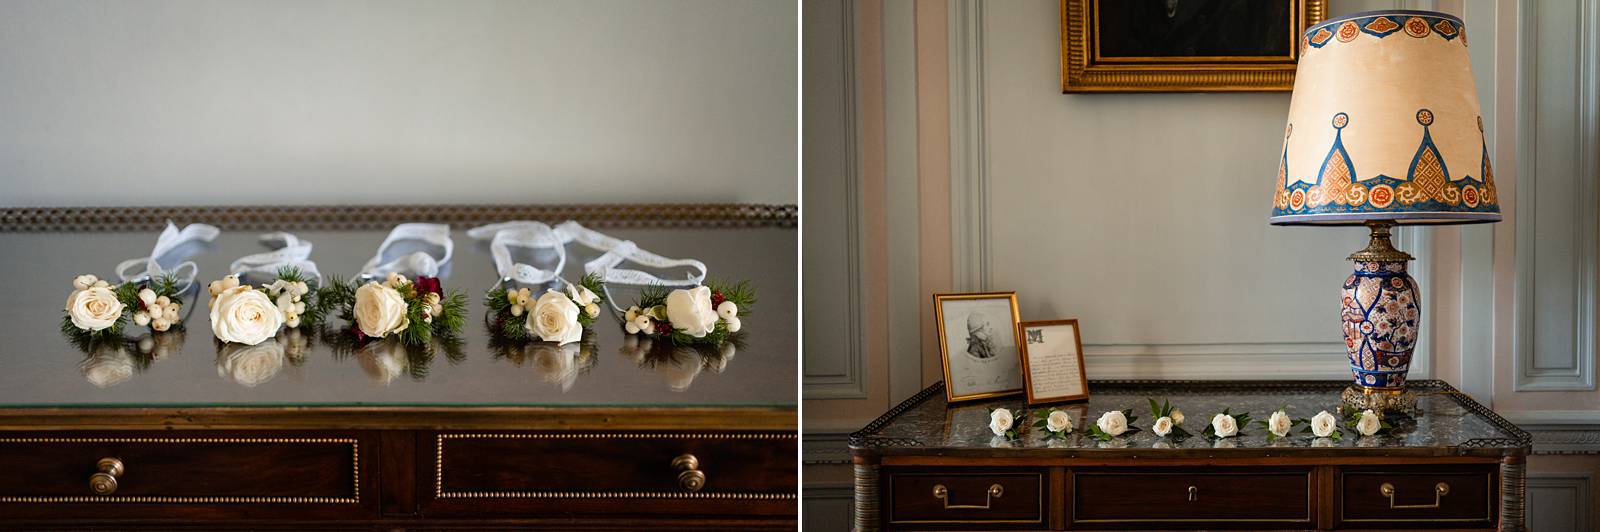 Mariage laïque au Château de Bonnemare en Normandie. Accessoires fleurs mariage. Alexandre Roschewitz photographe mariage.